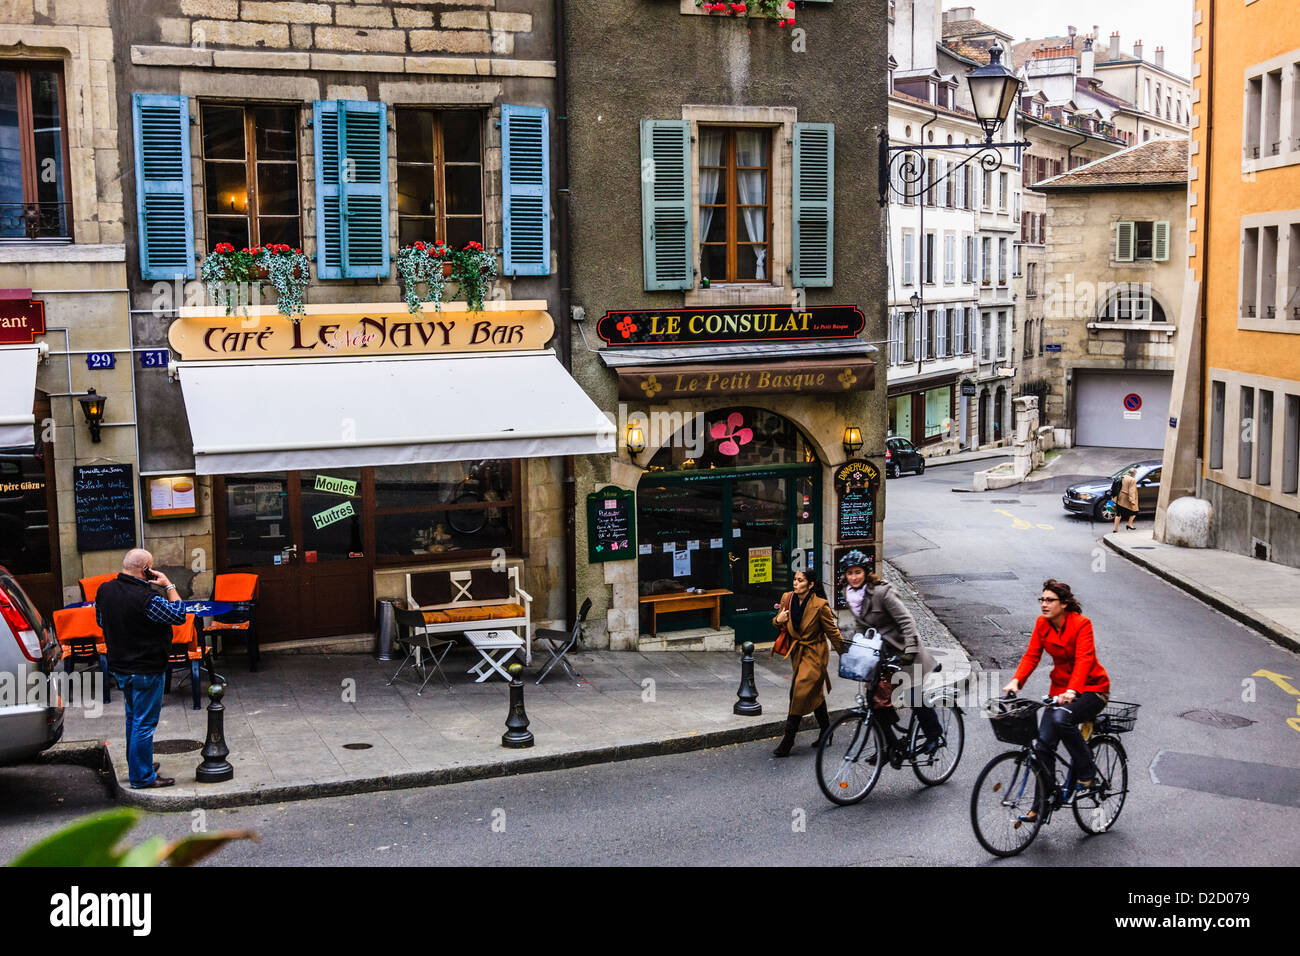 Des cyclistes et des cafés-bars à la vieille ville (vieille ville) Genève, Suisse Banque D'Images